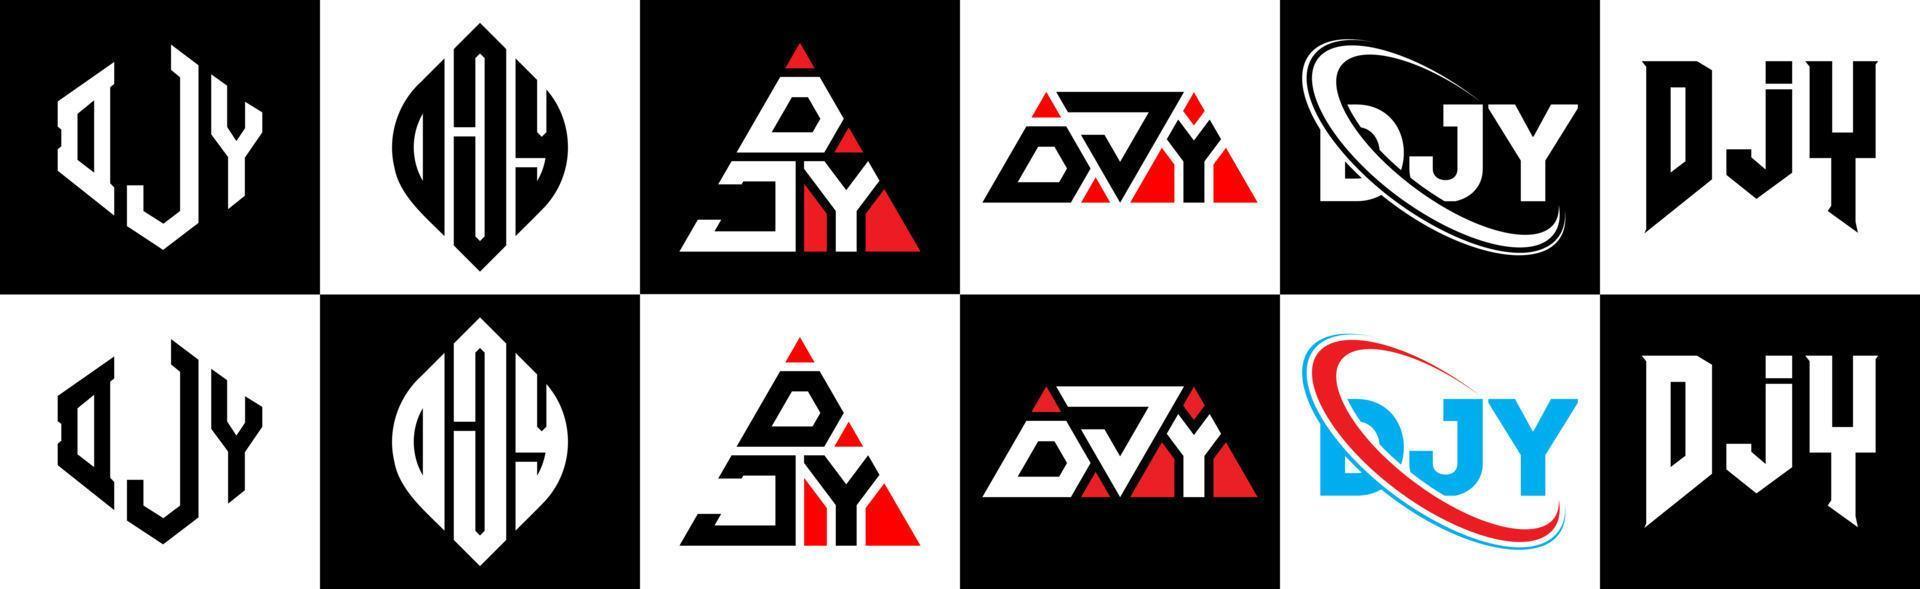 création de logo de lettre djy en six styles. polygone djy, cercle, triangle, hexagone, style plat et simple avec logo de lettre de variation de couleur noir et blanc dans un plan de travail. logo djy minimaliste et classique vecteur